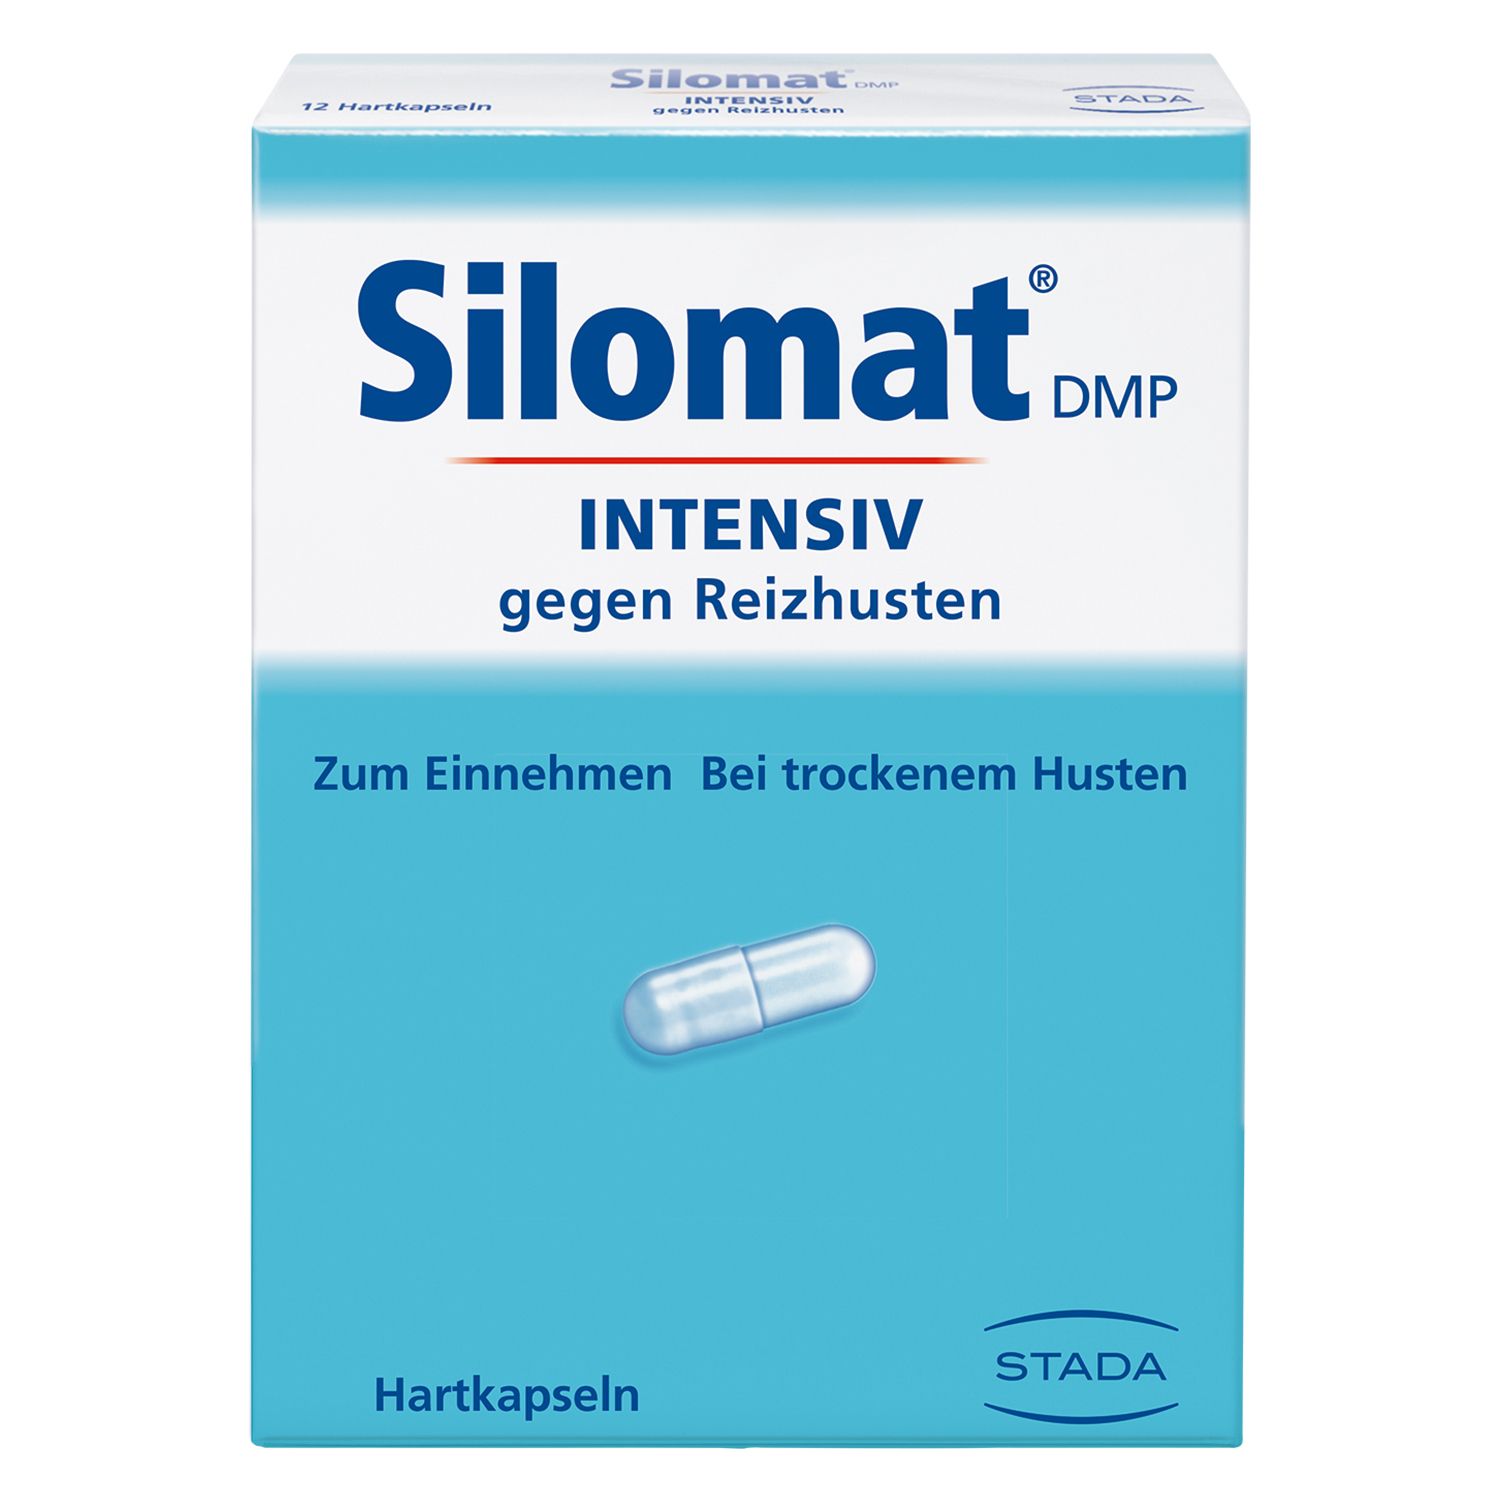 Silomat® DMP Intensiv gegen Reizhusten